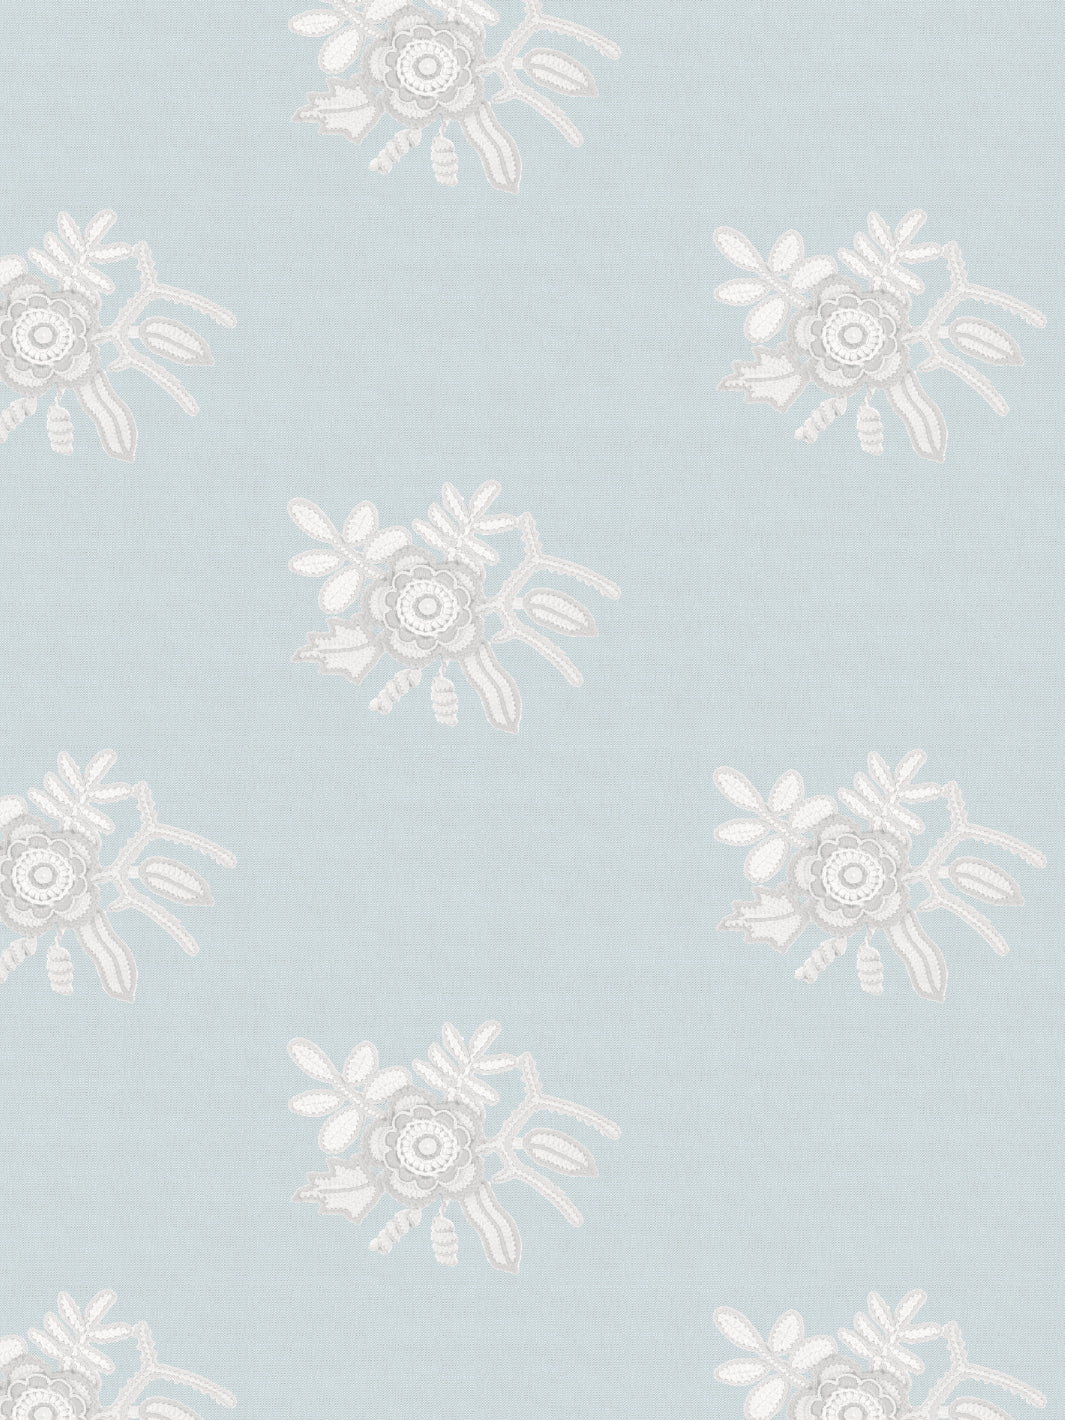 'Crochet Lace Flowers' Wallpaper by Lingua Franca - Blue